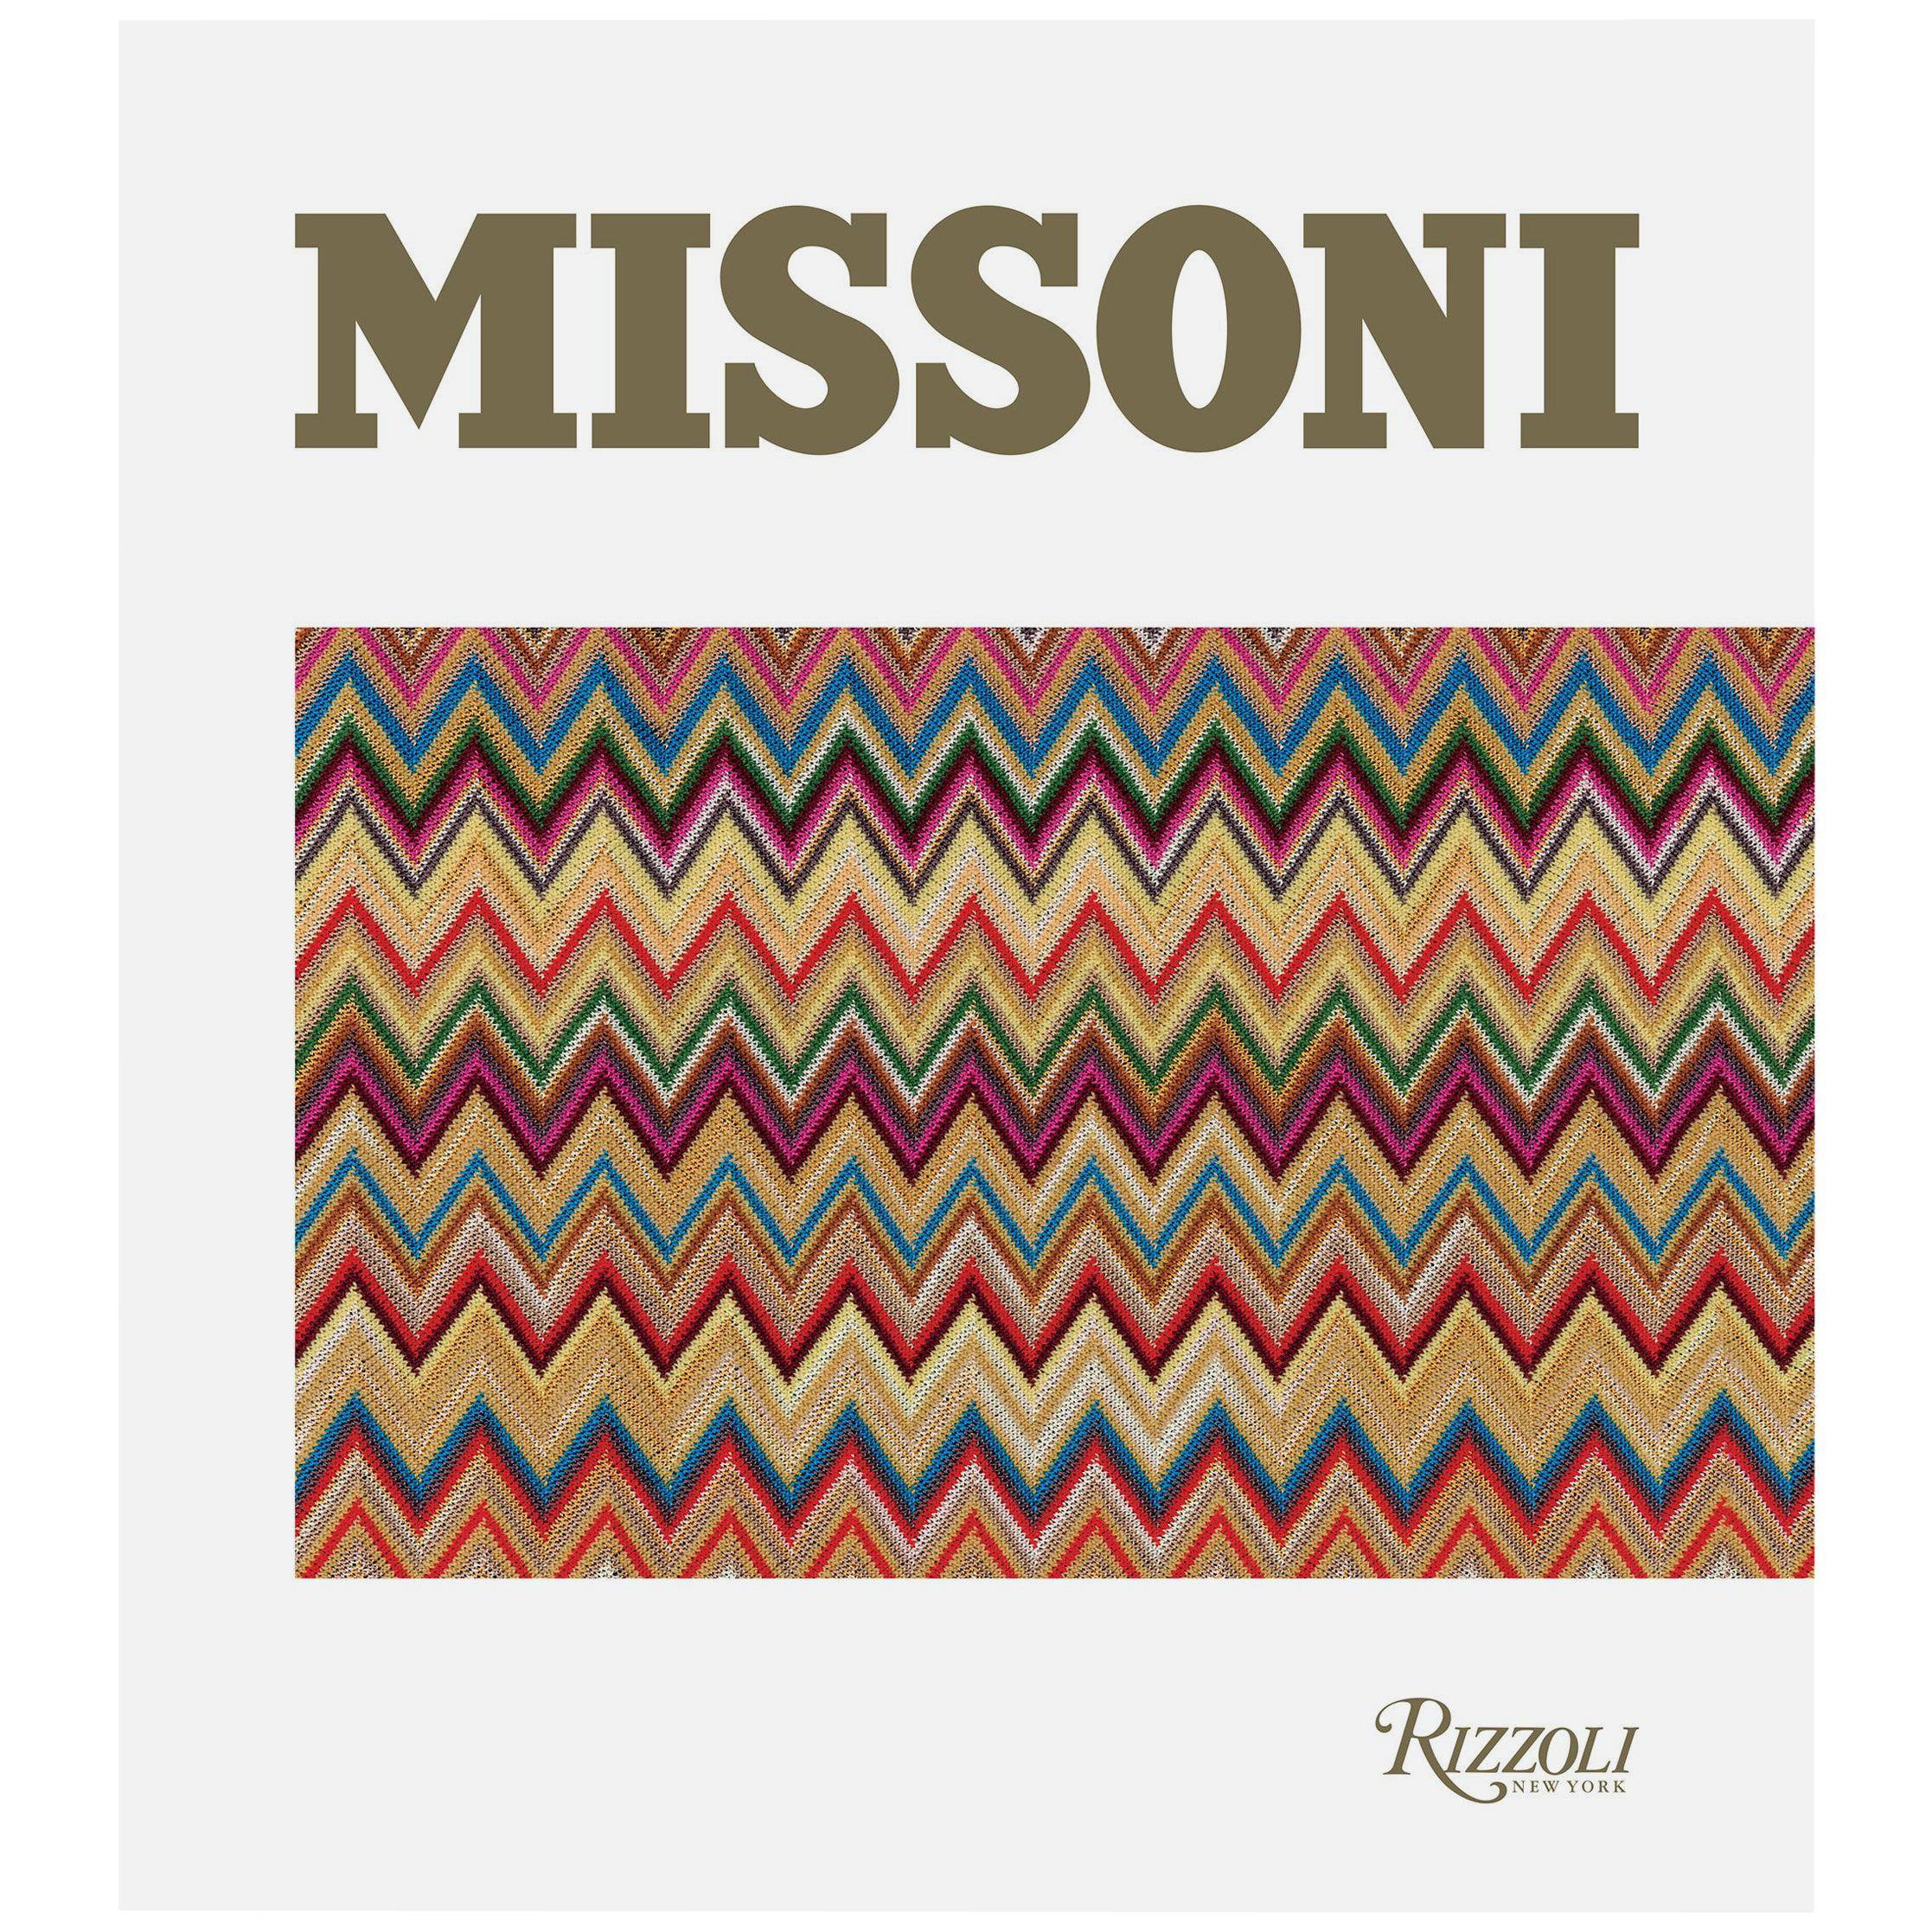 Deluxe-Ausgabe von Missoni